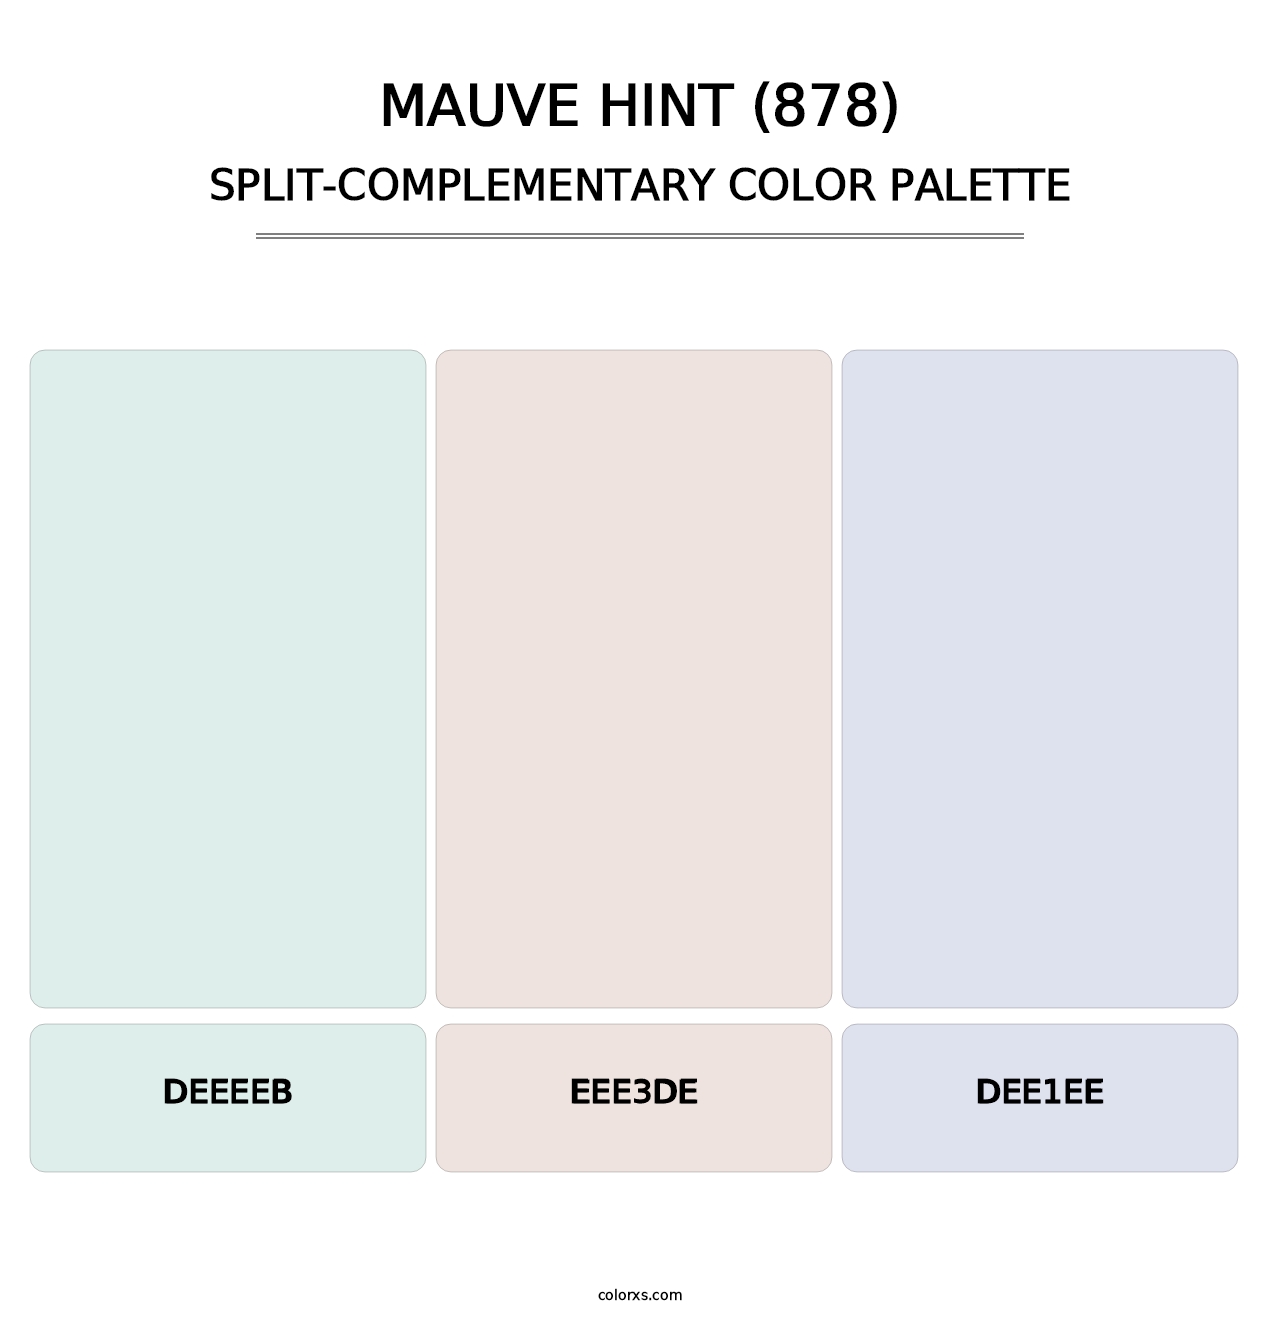 Mauve Hint (878) - Split-Complementary Color Palette